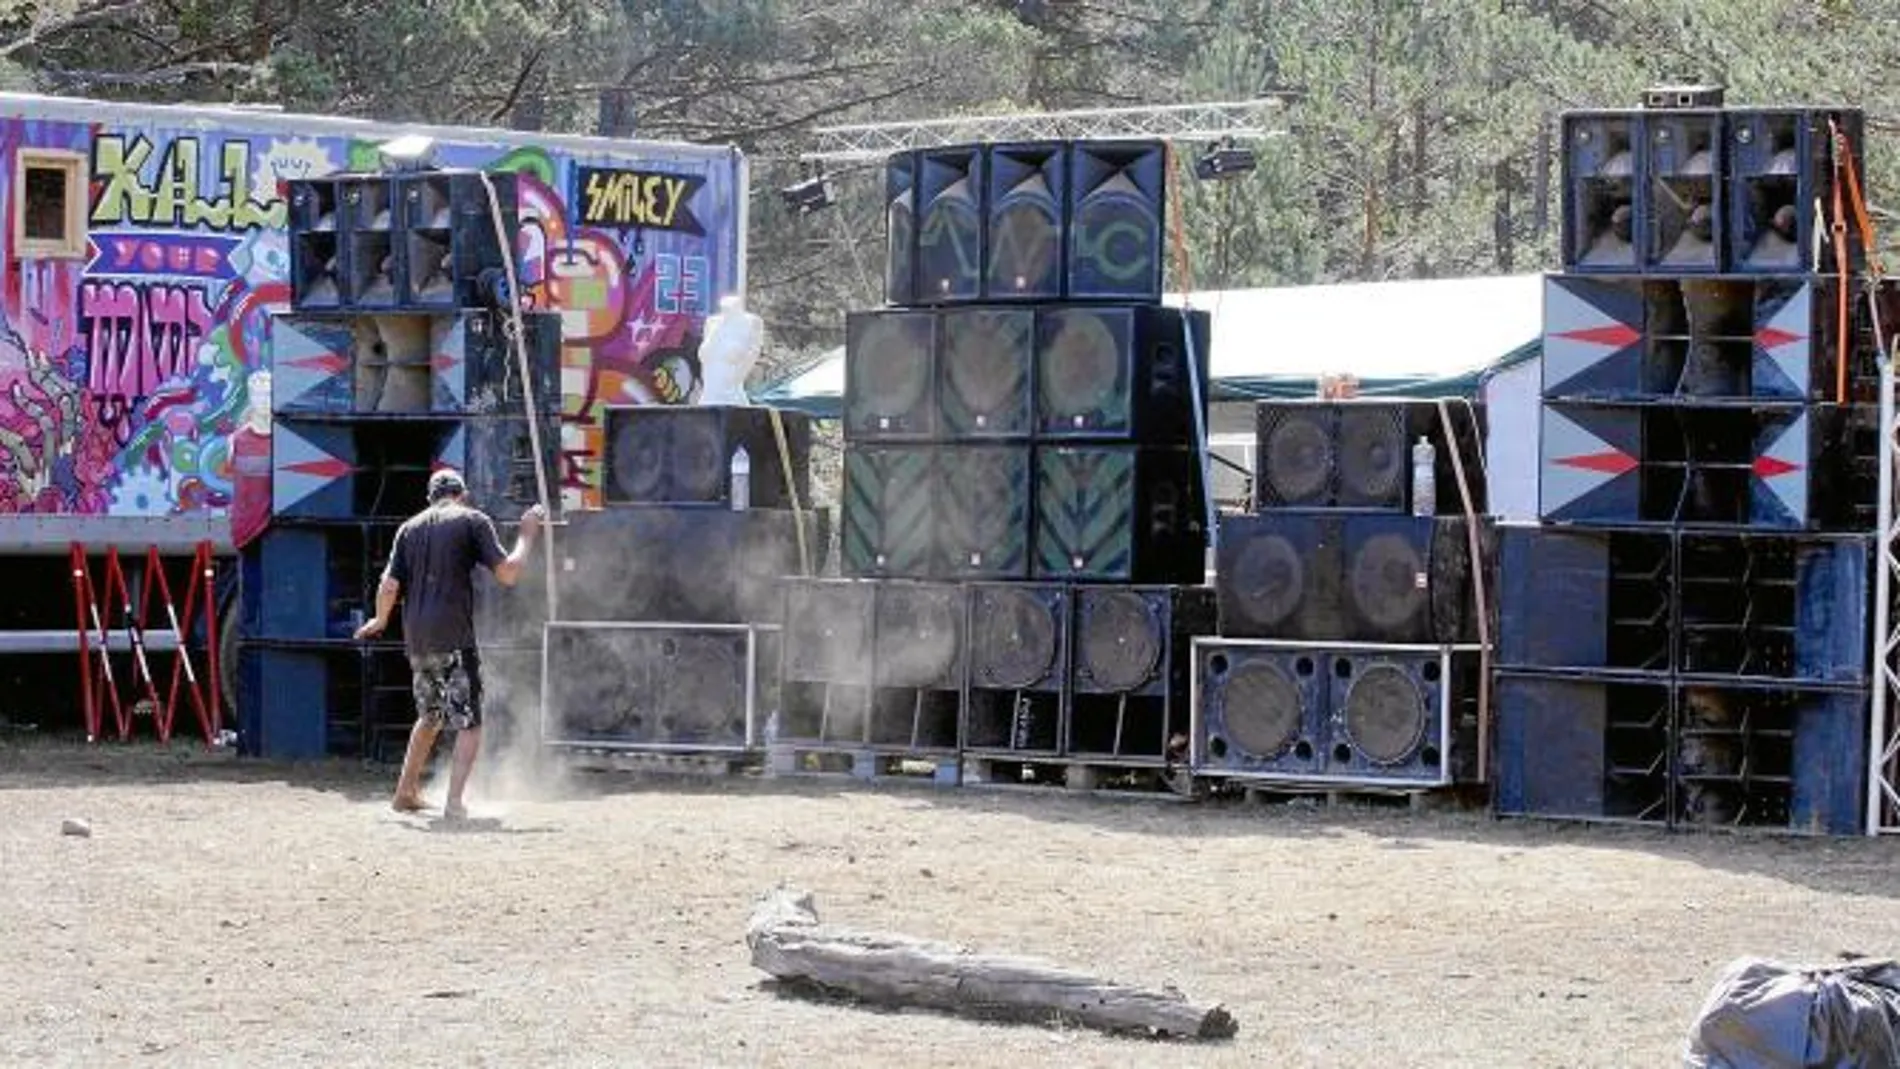 Un joven baila junto a los nueve bafles instalados estos cinco días que ha durado la acampada ilegal